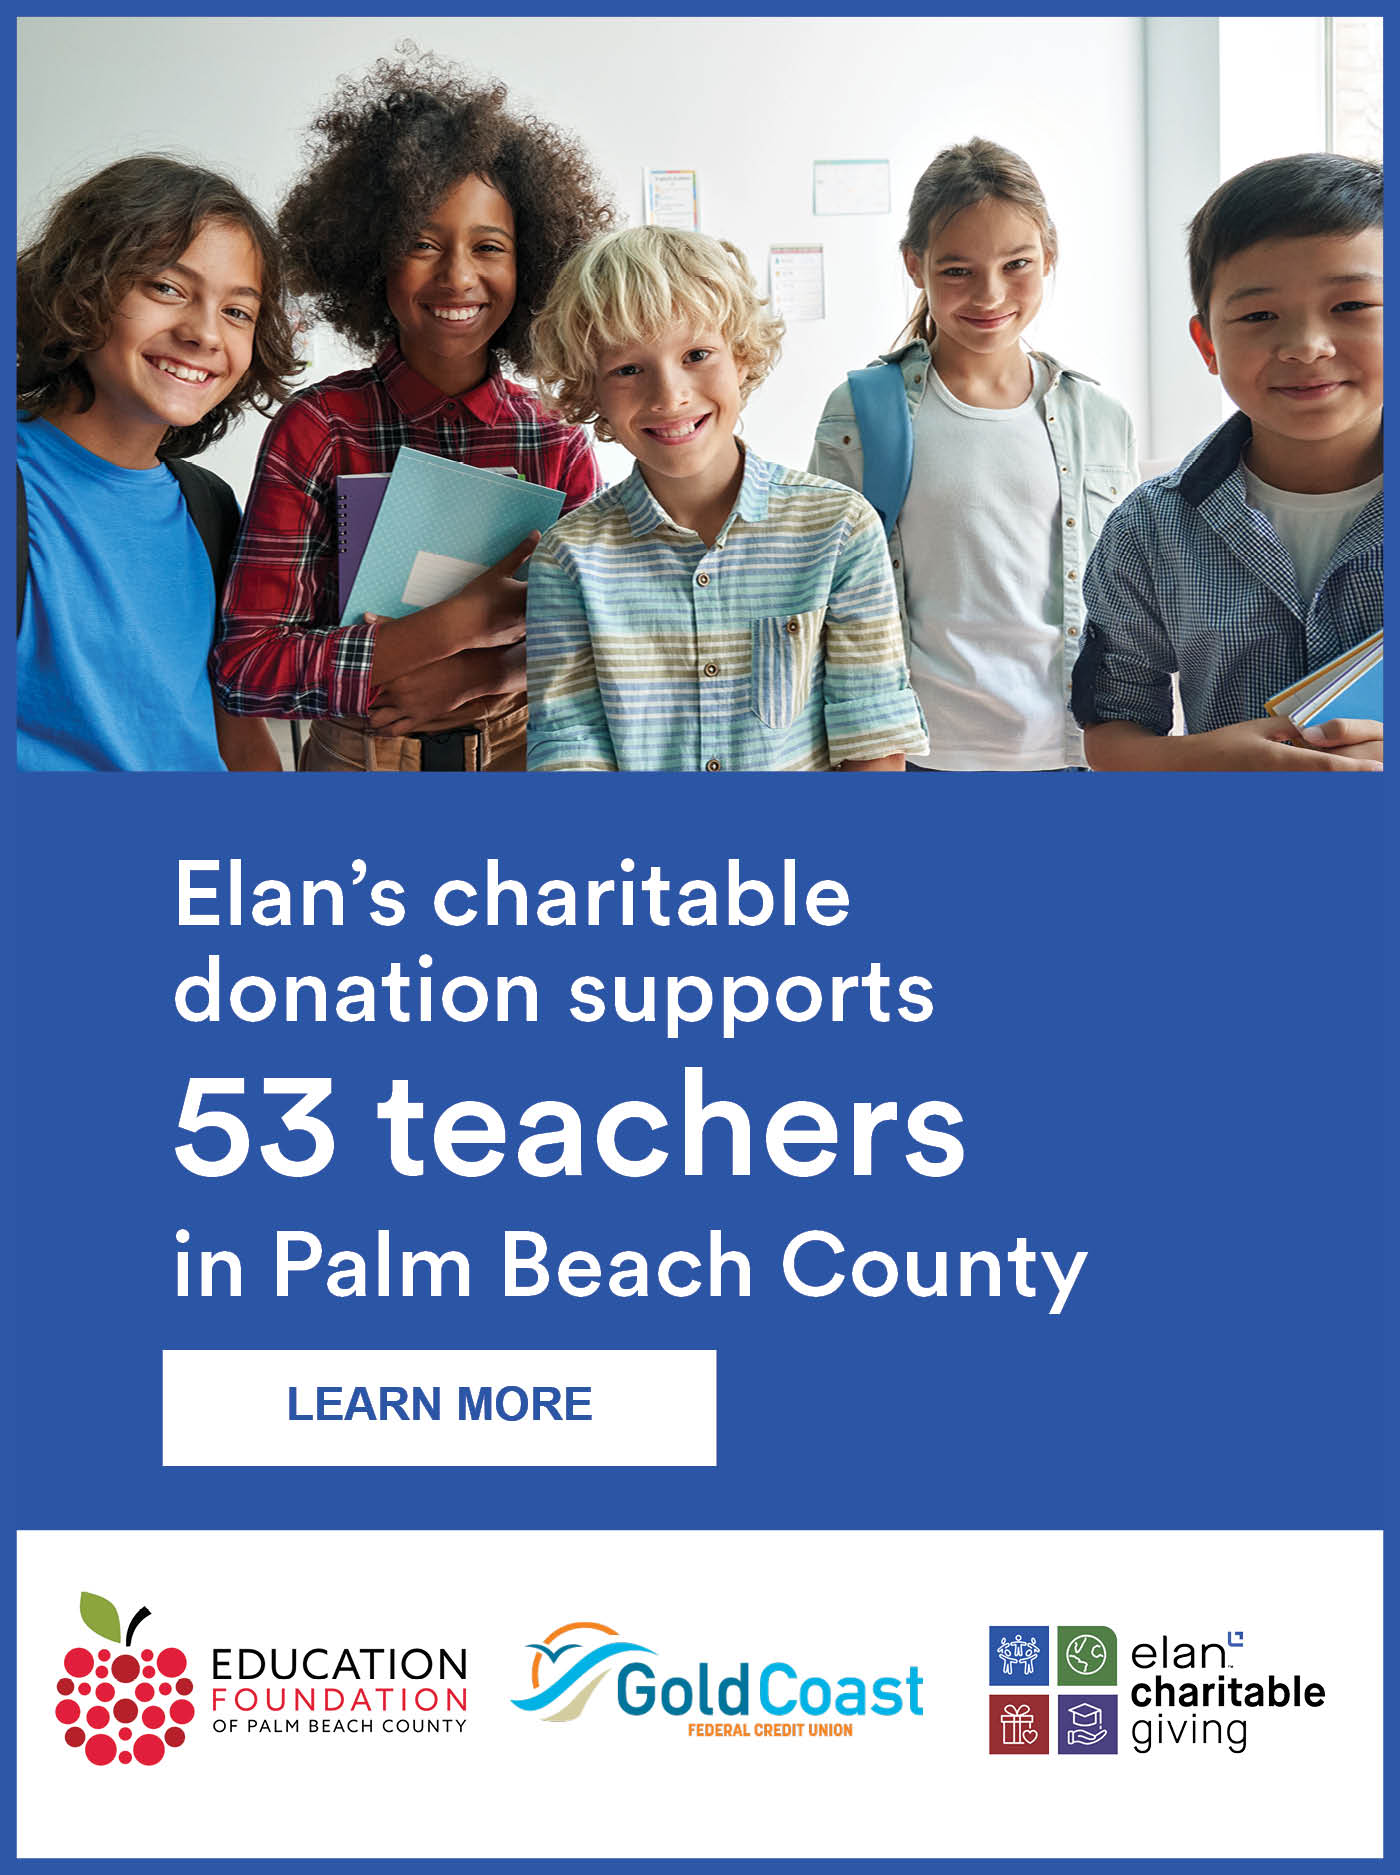 图为Elan的慈善捐款支持棕榈滩县的53名教师